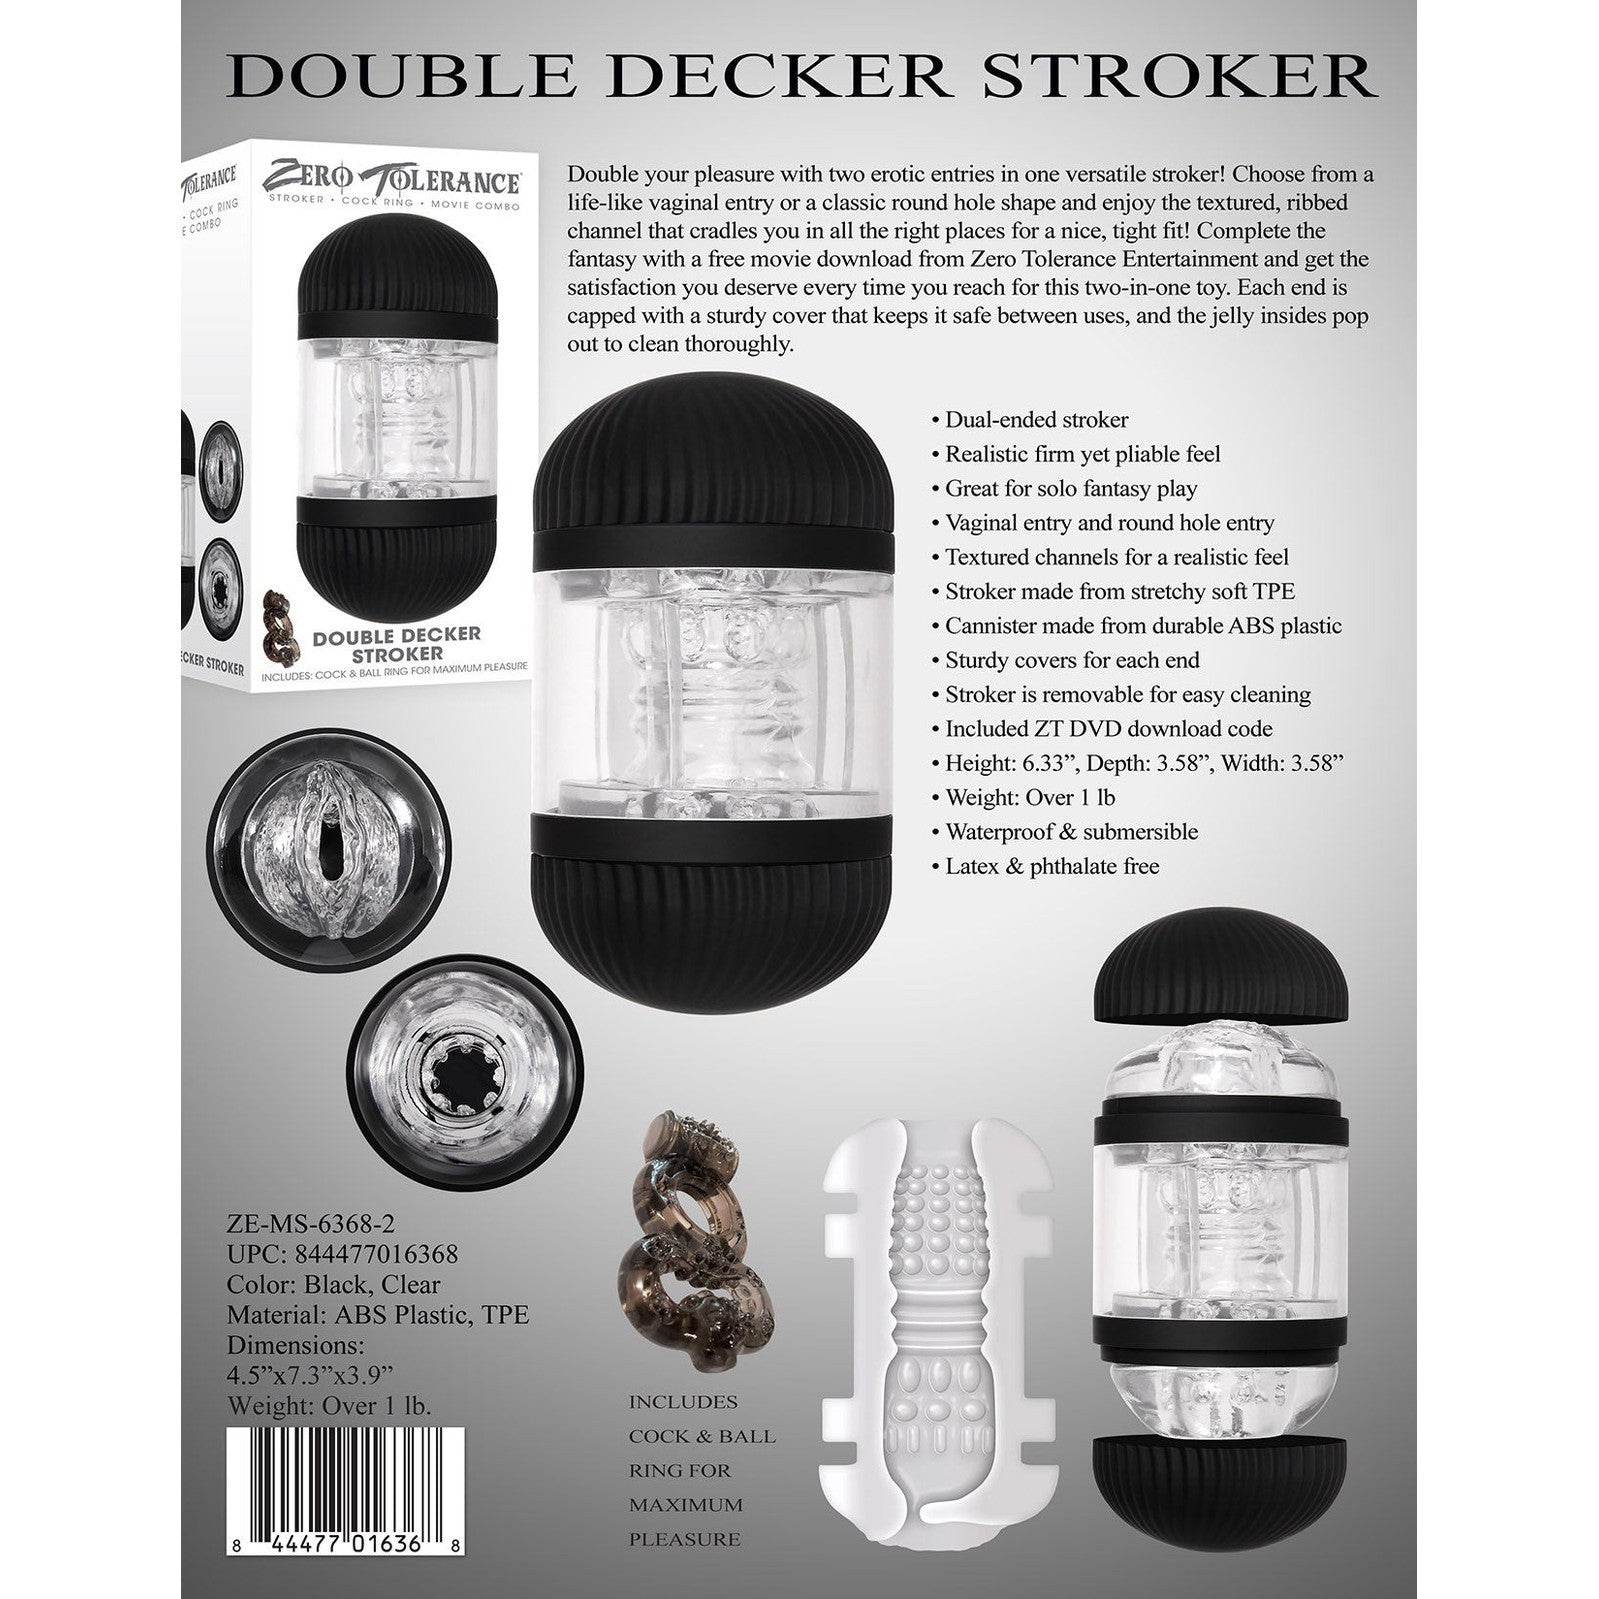 Double Decker Stroker